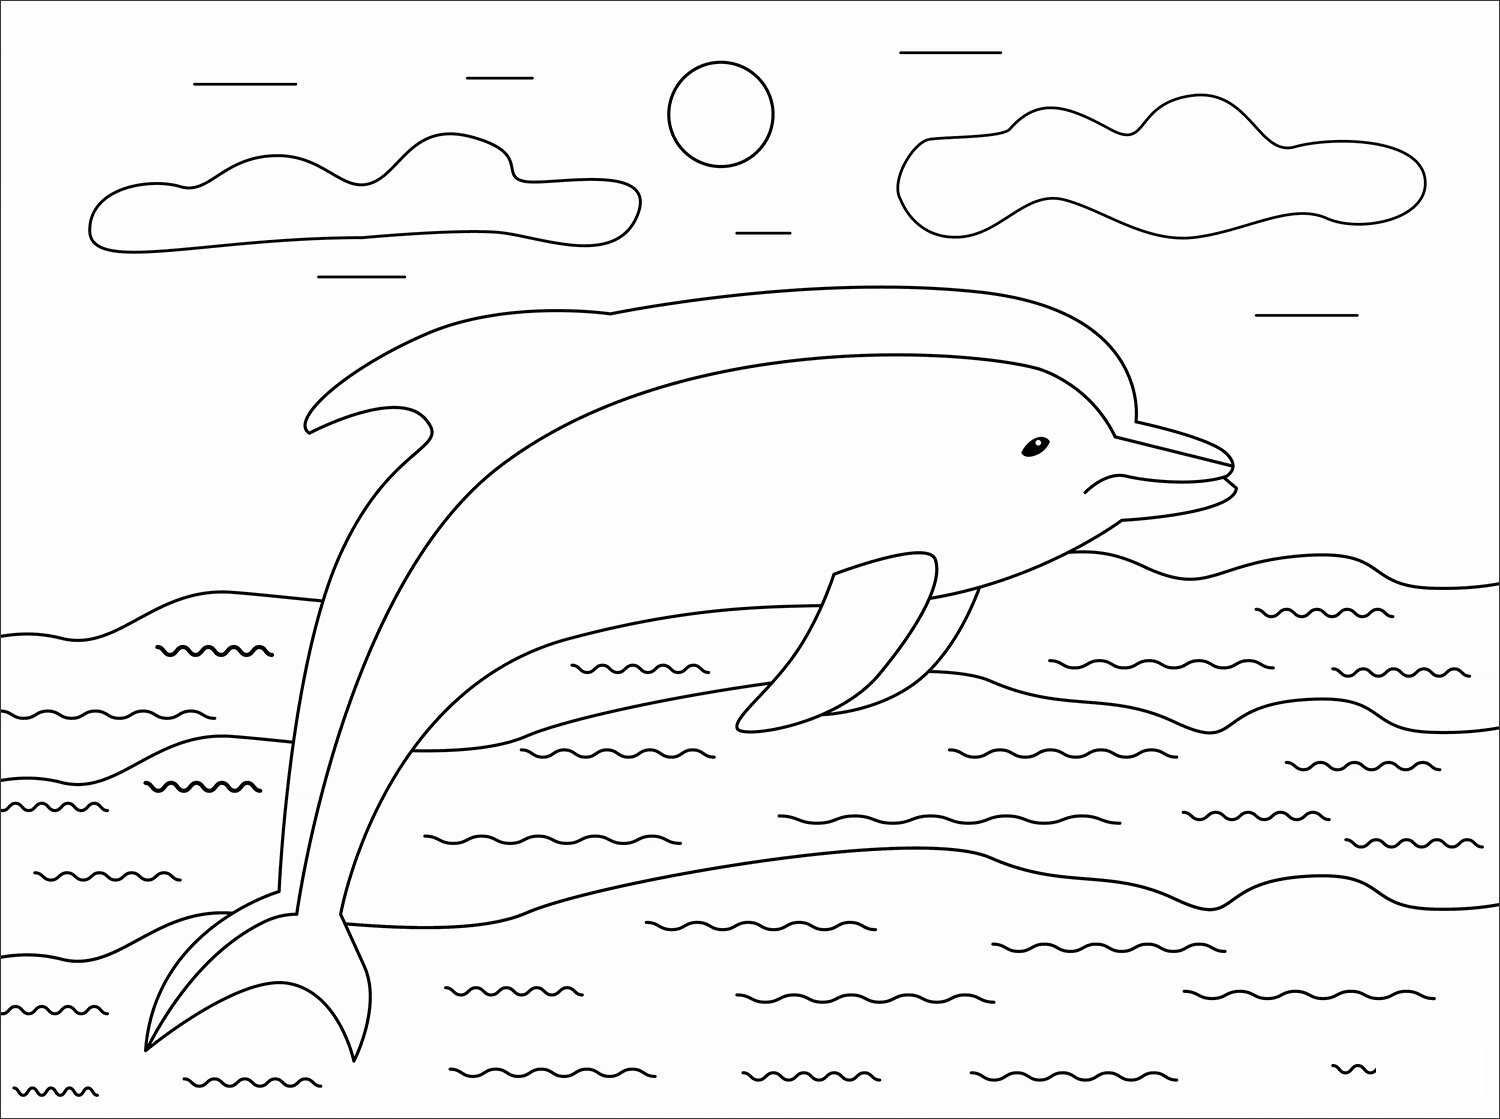 O golfinho comum de bico curto nada ao sol do Dolphin